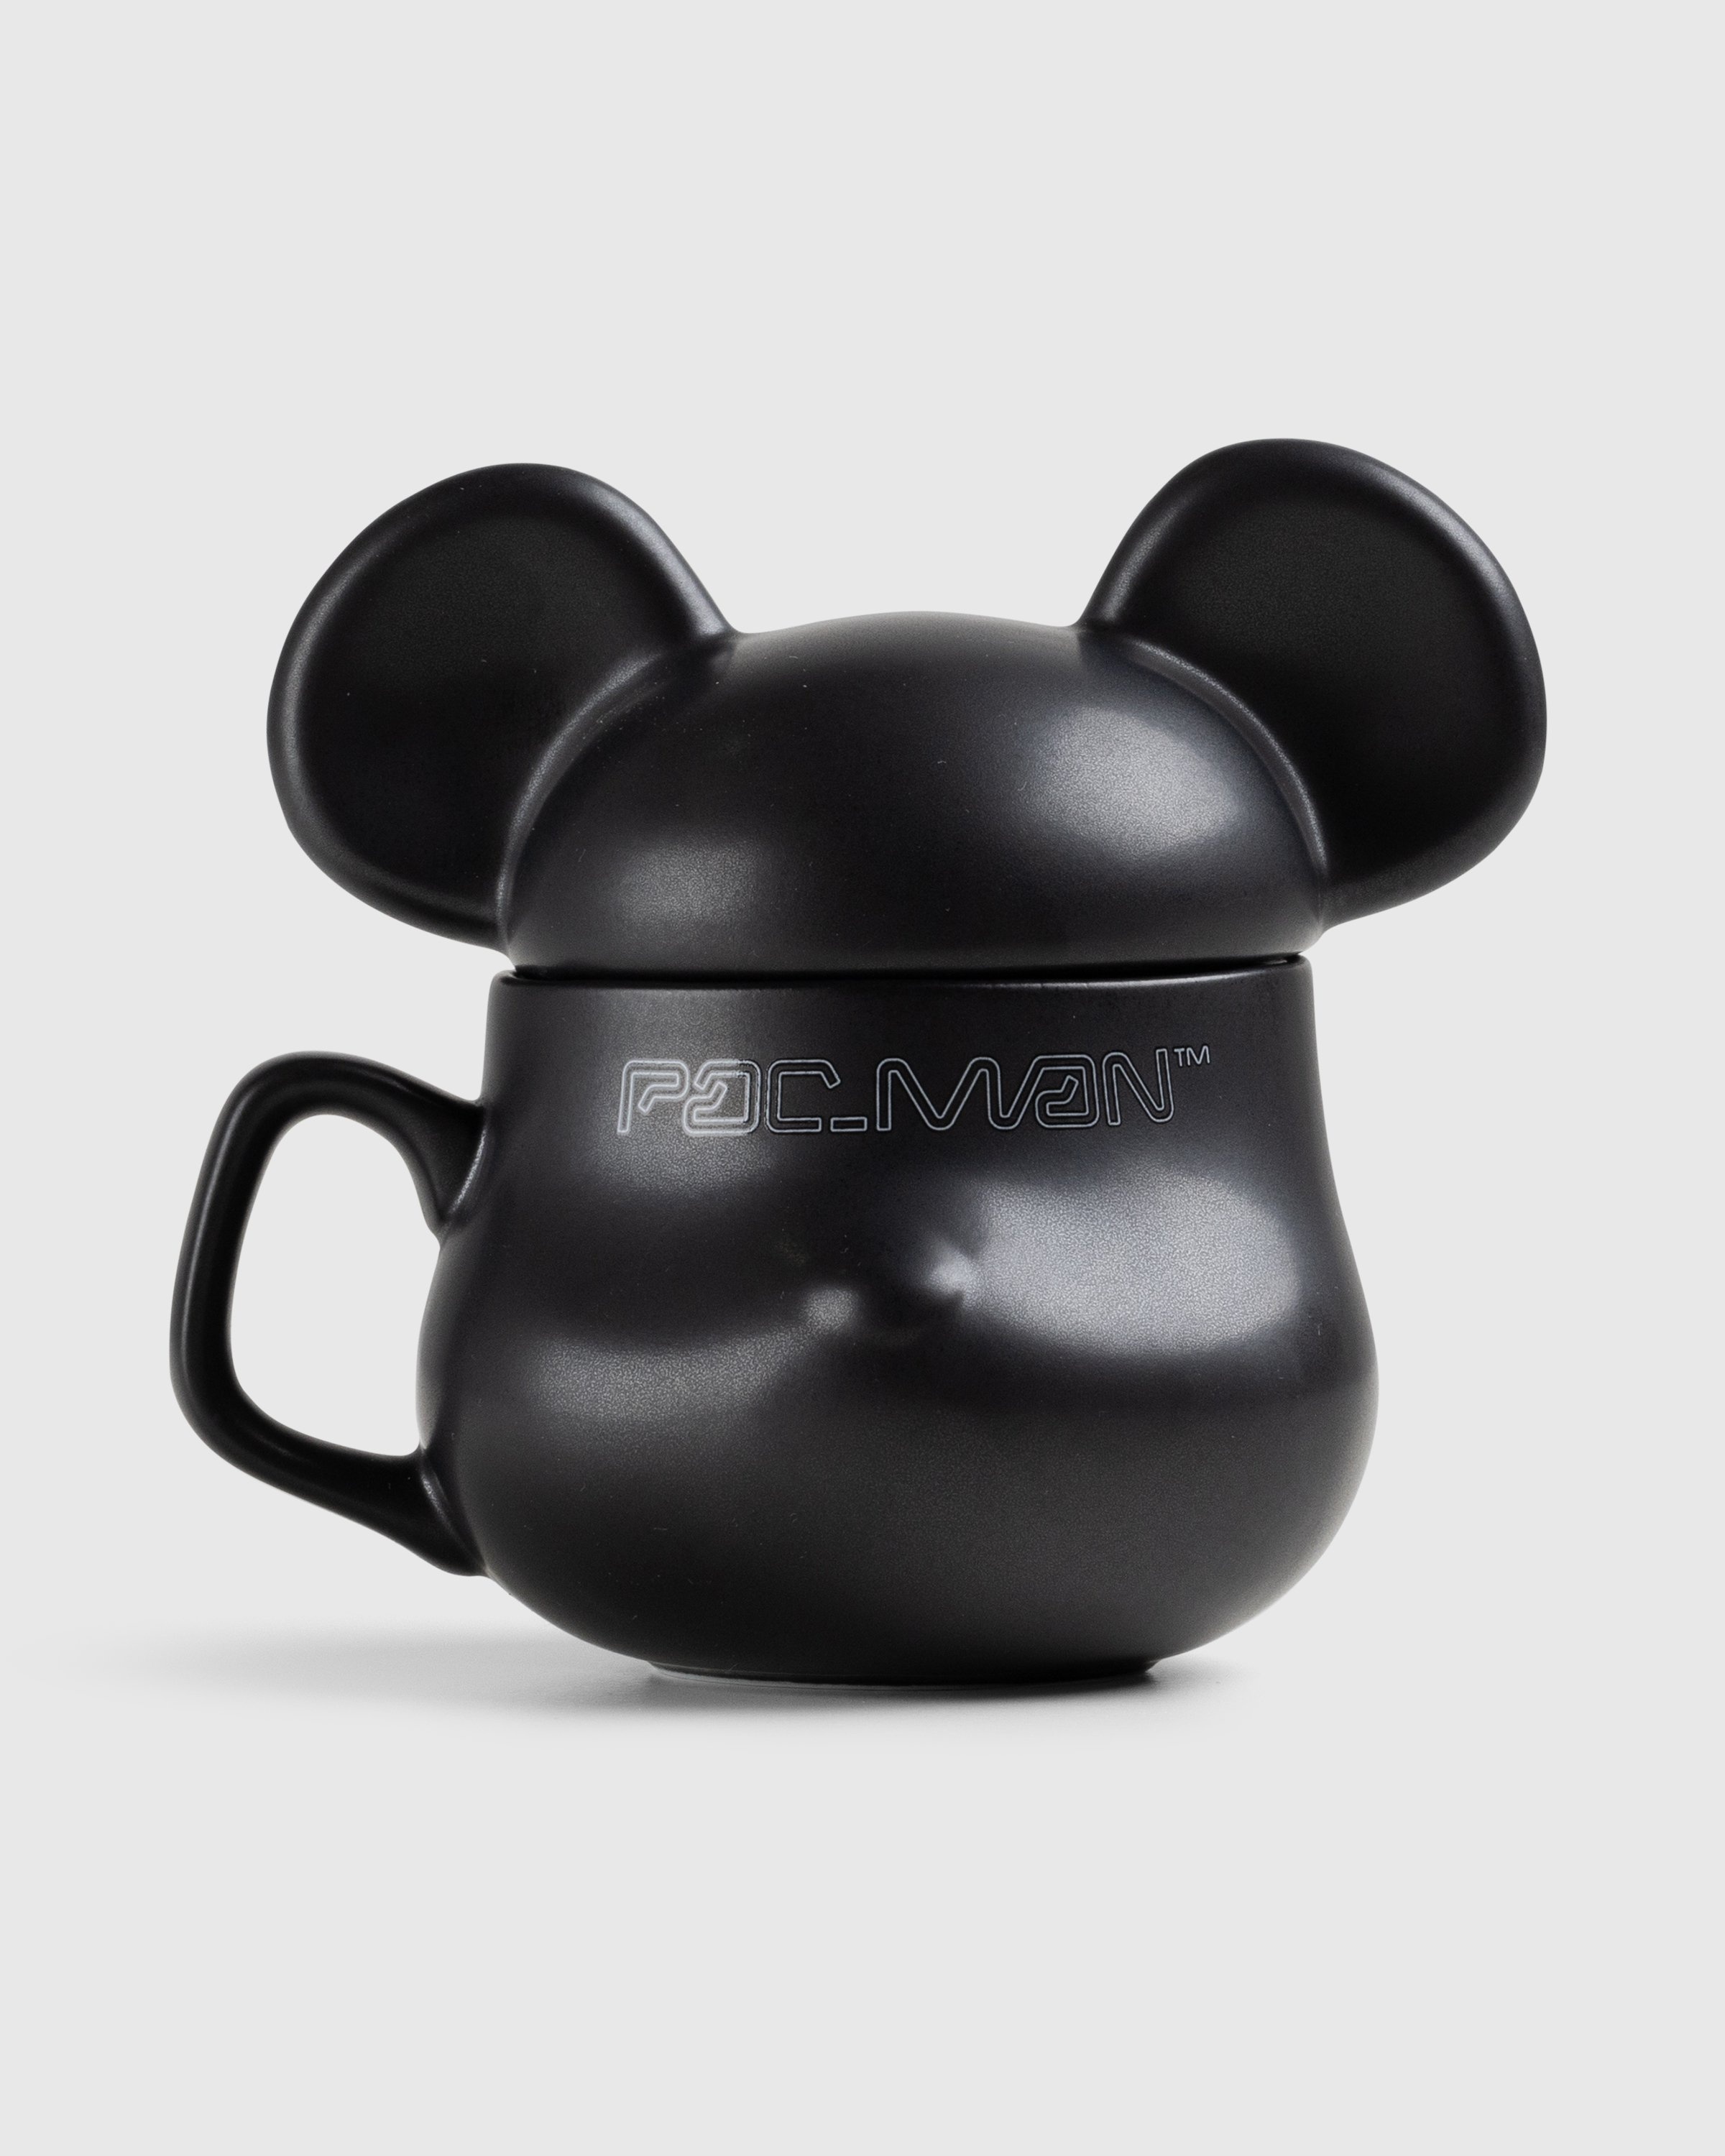 Medicom – Pac-Man Be@rmug Multi - Ceramics - Multi - Image 1